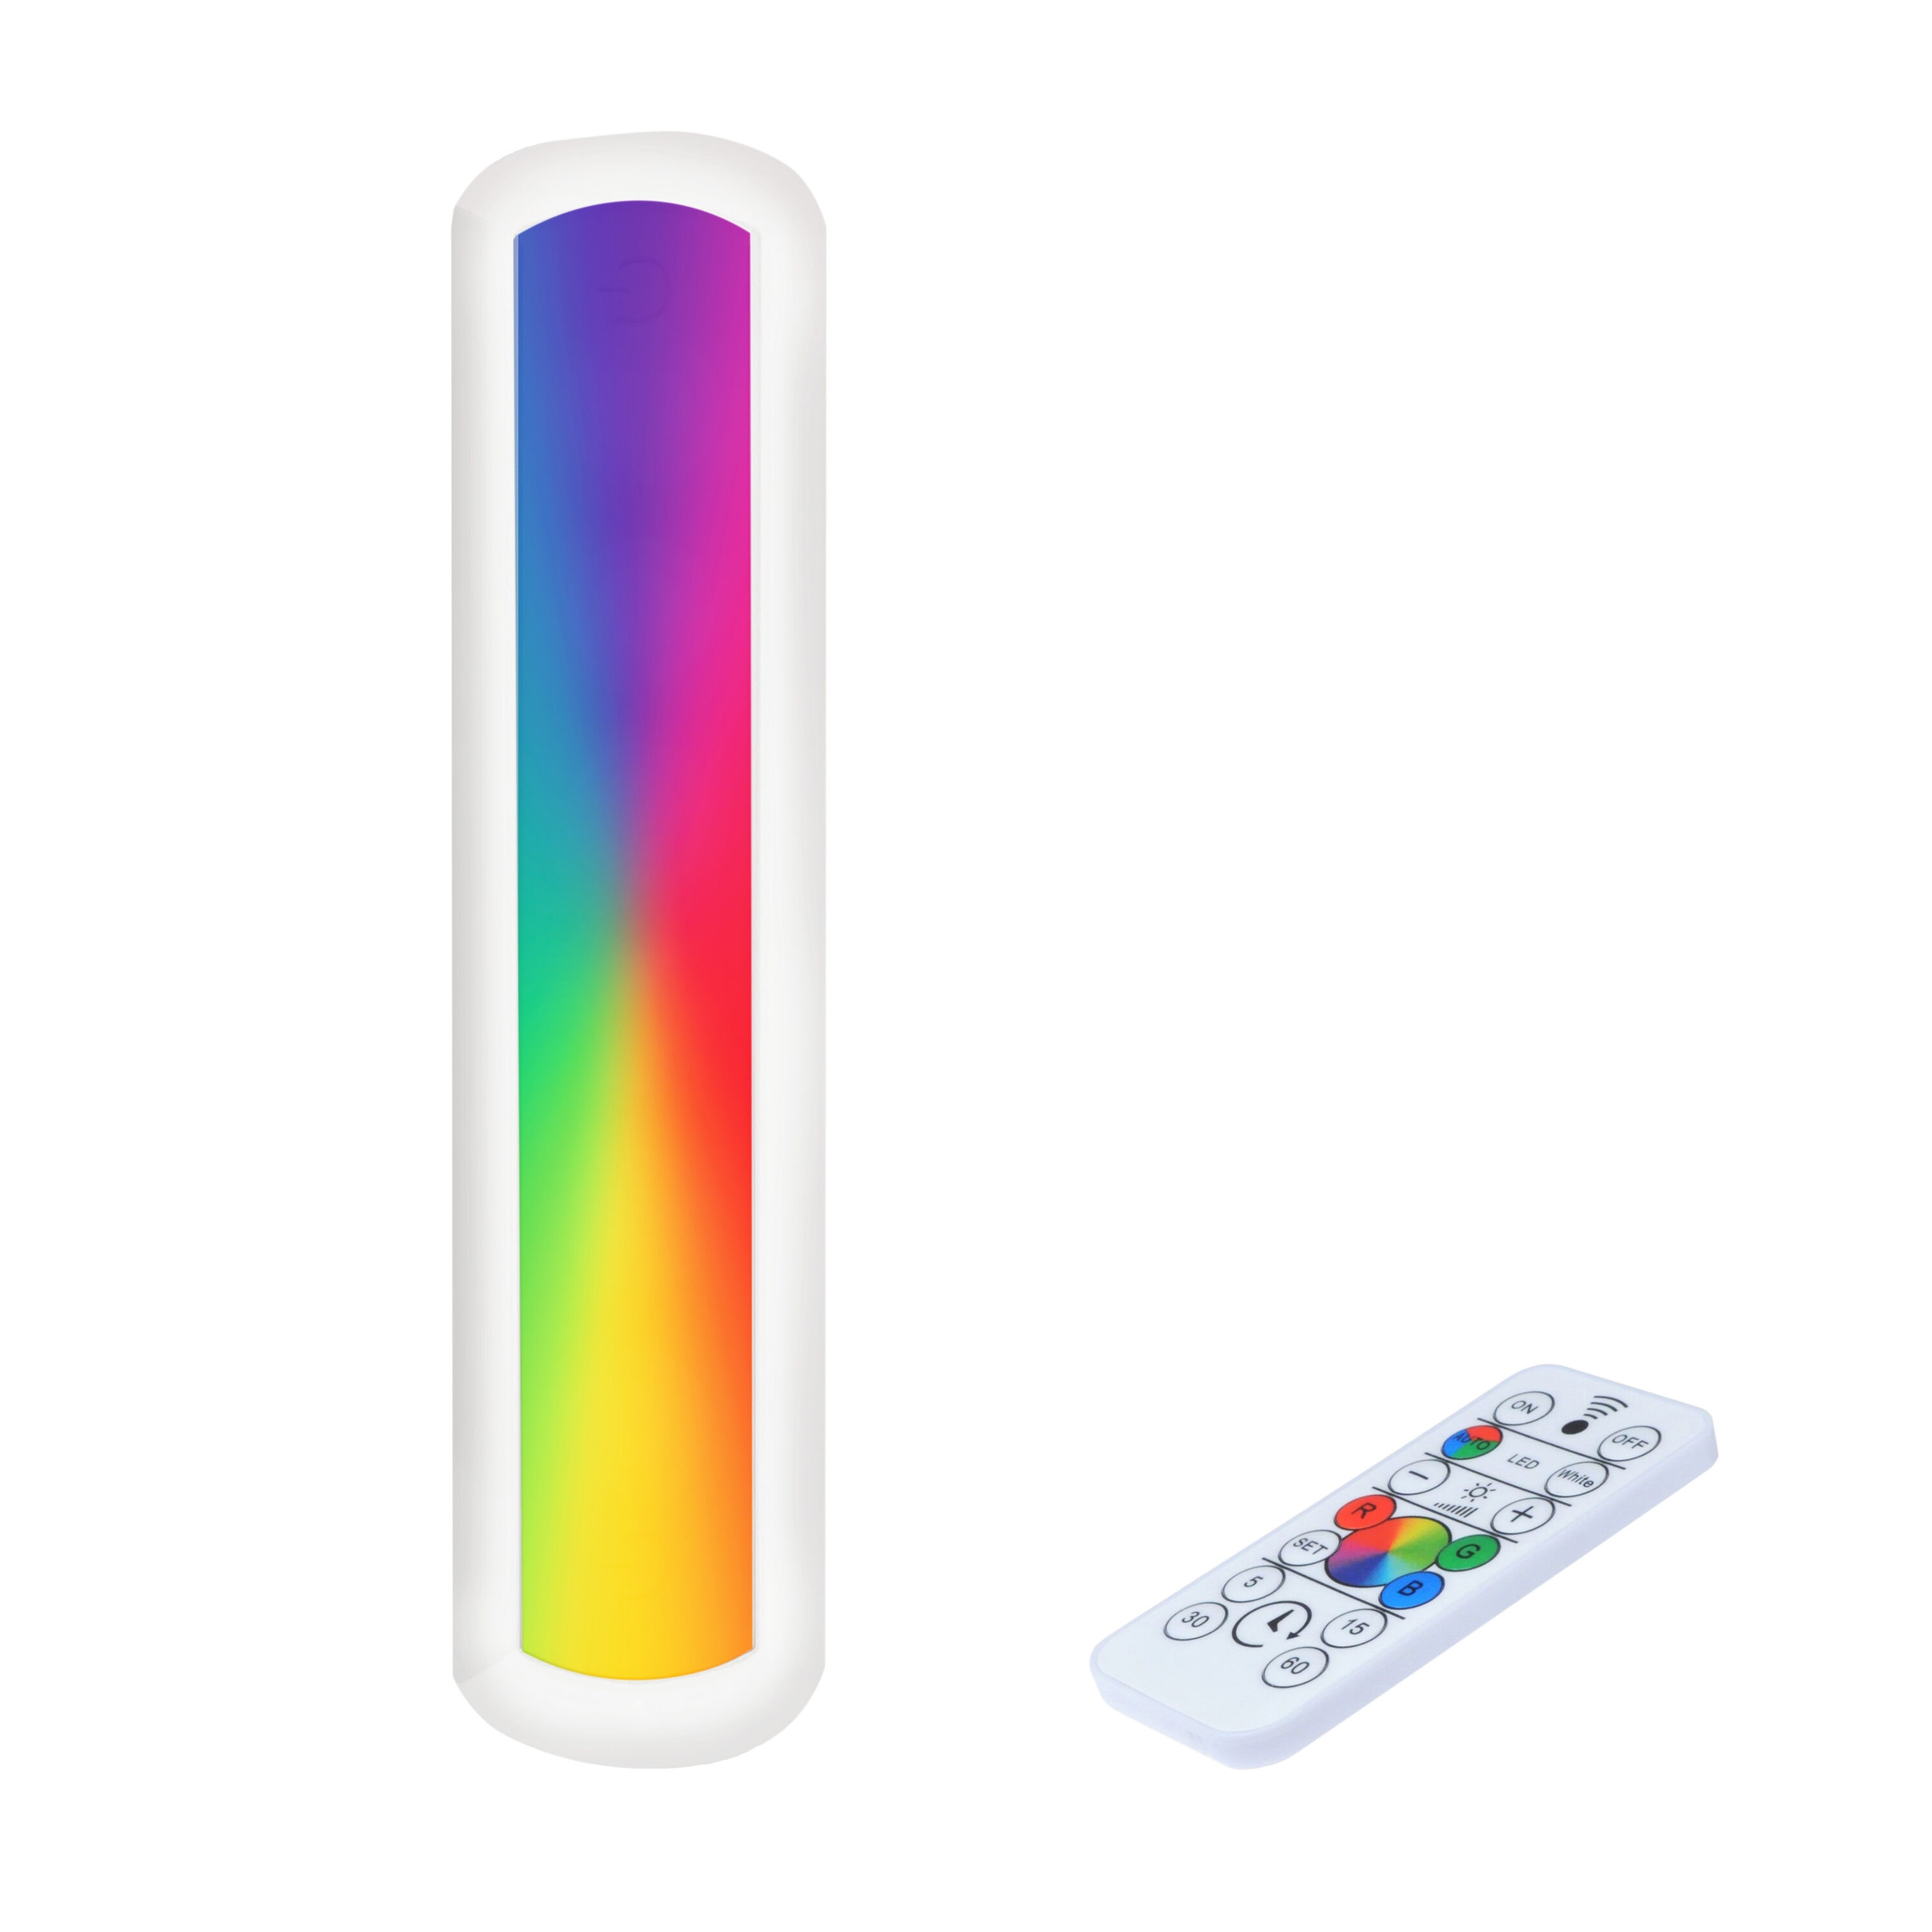 OUTLET – Altavoz Karaoke Serie 025-19 Multicolor LED - Eleciti